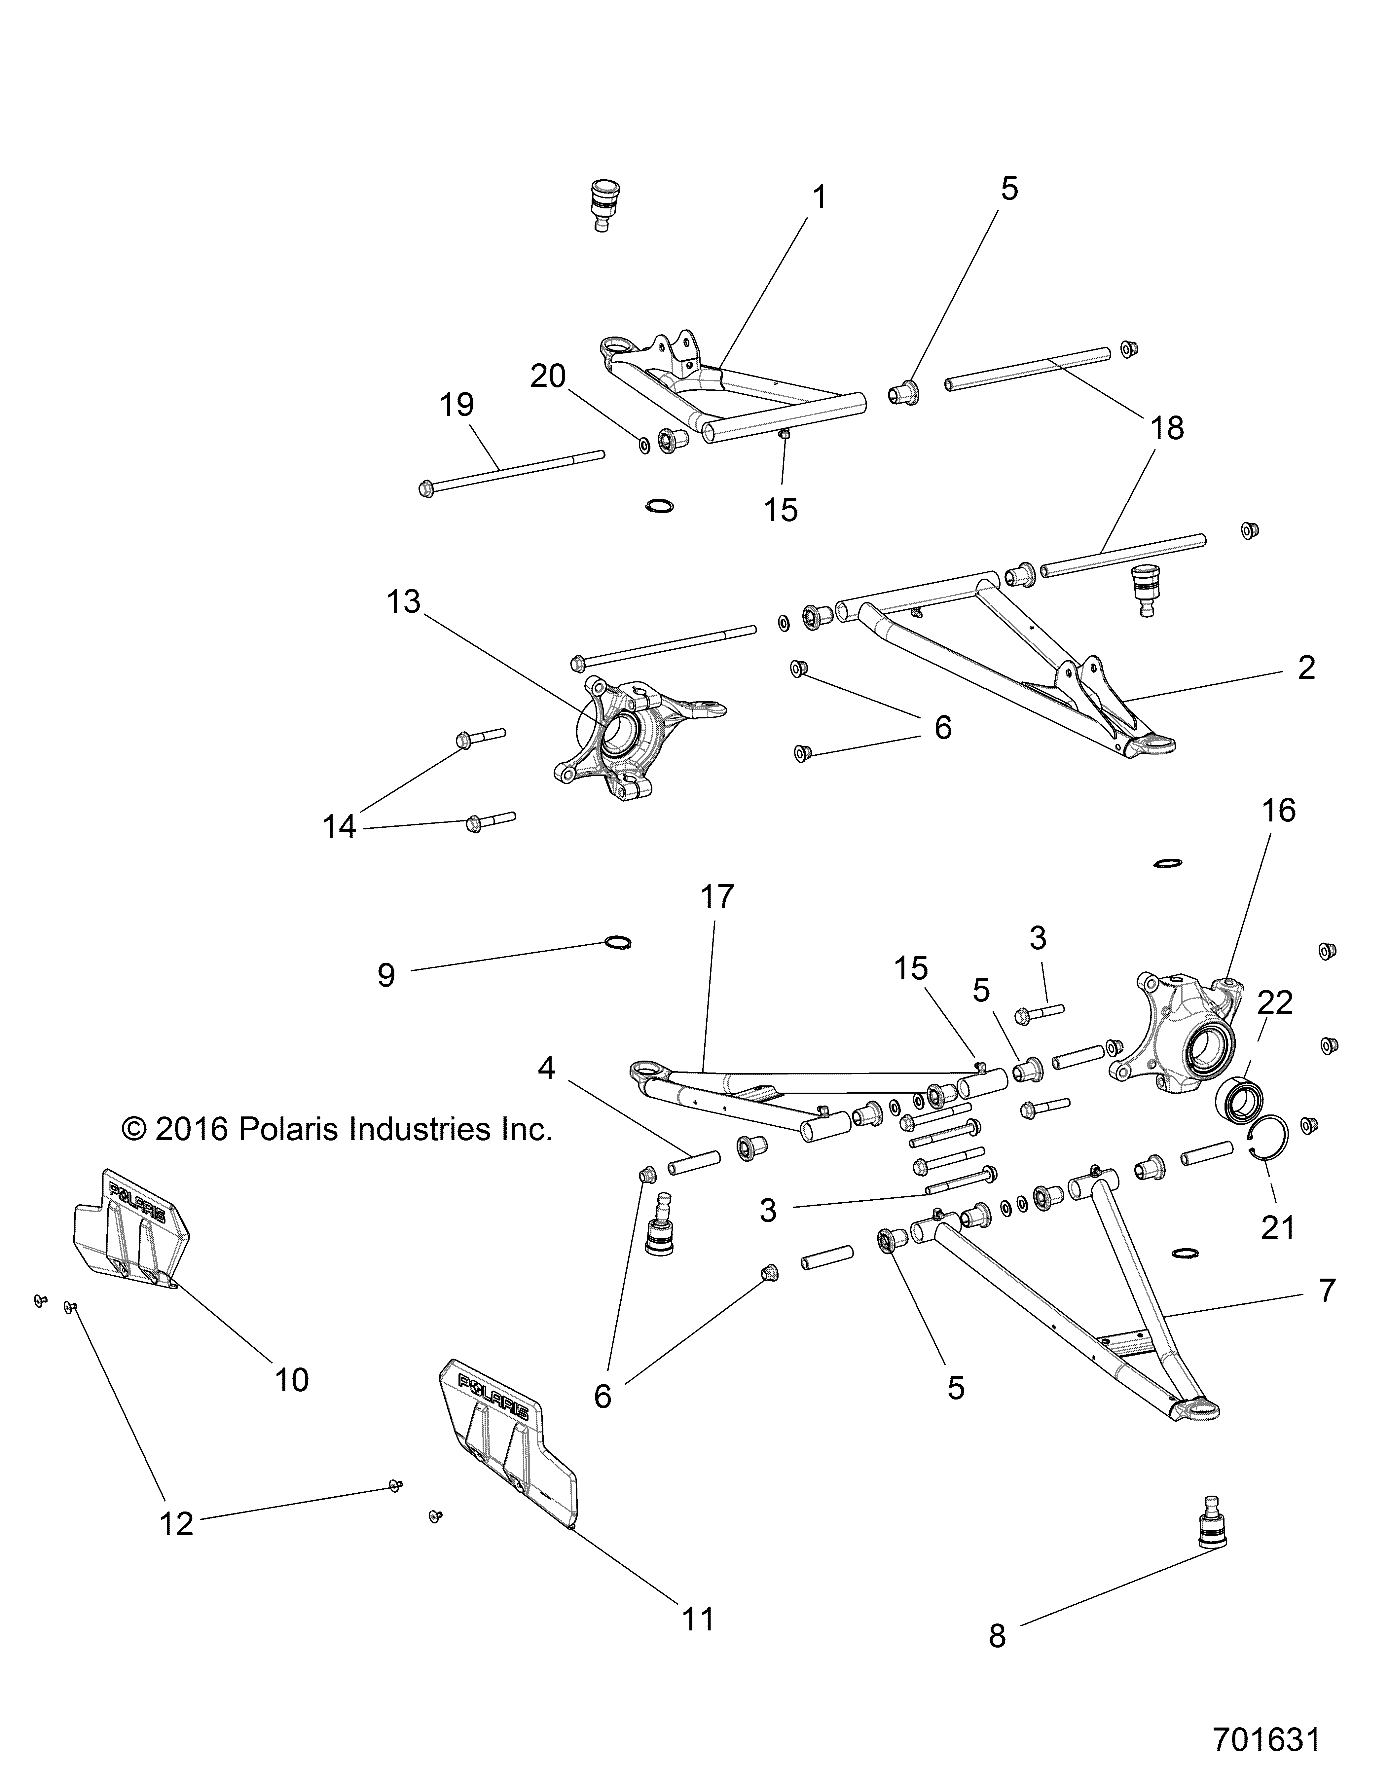 Foto diagrama Polaris que contem a peça 1020888-689